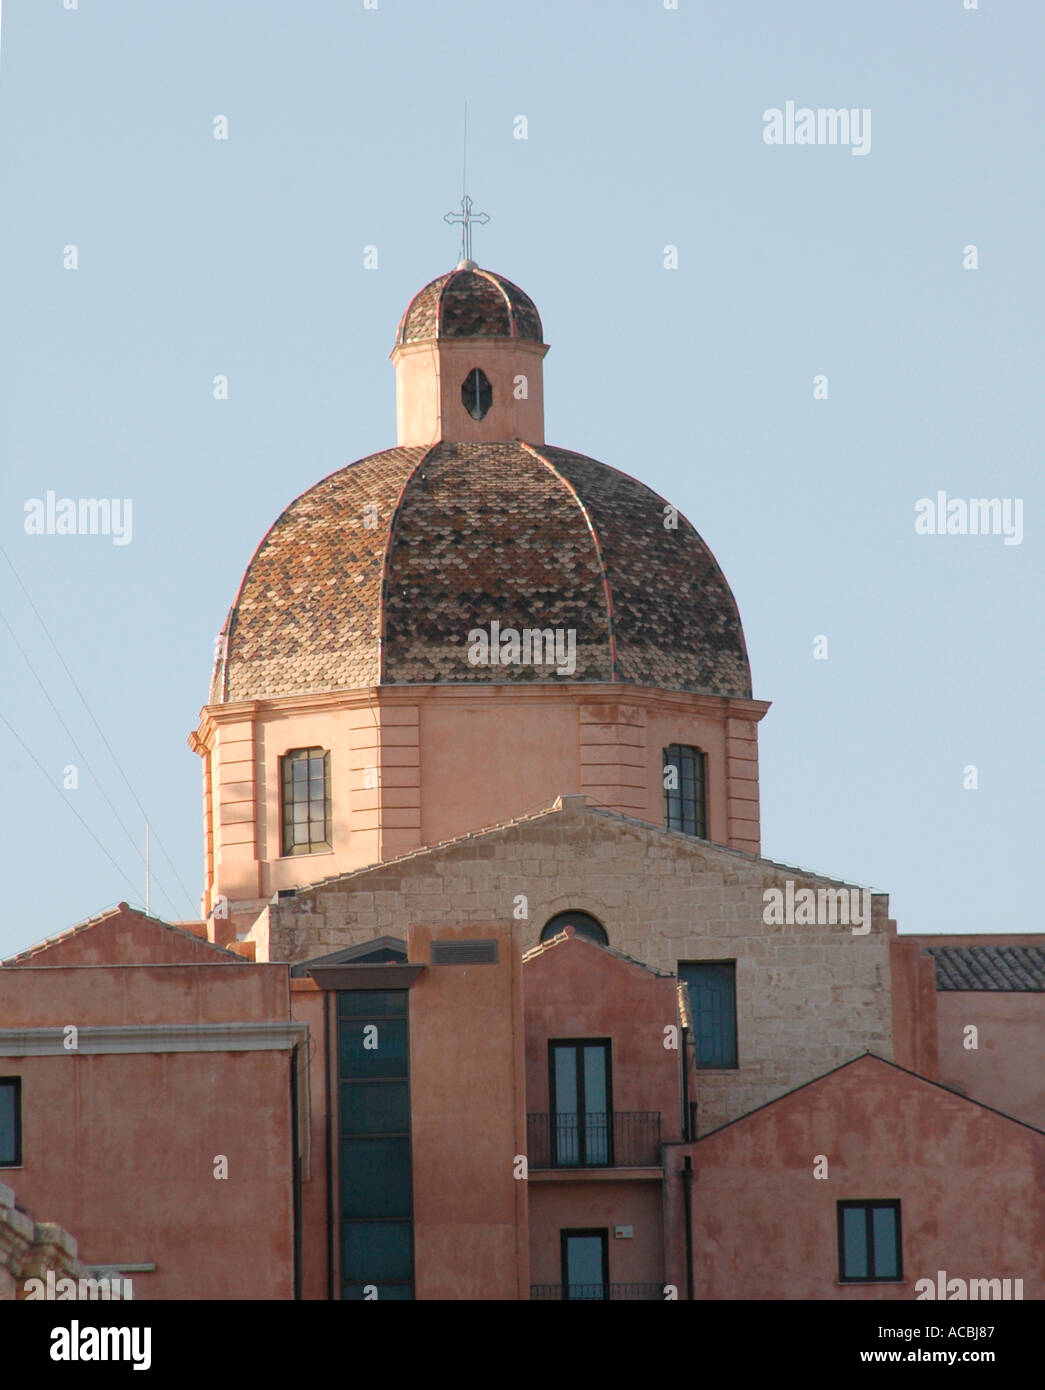 The Duomo Oristano Stock Photo